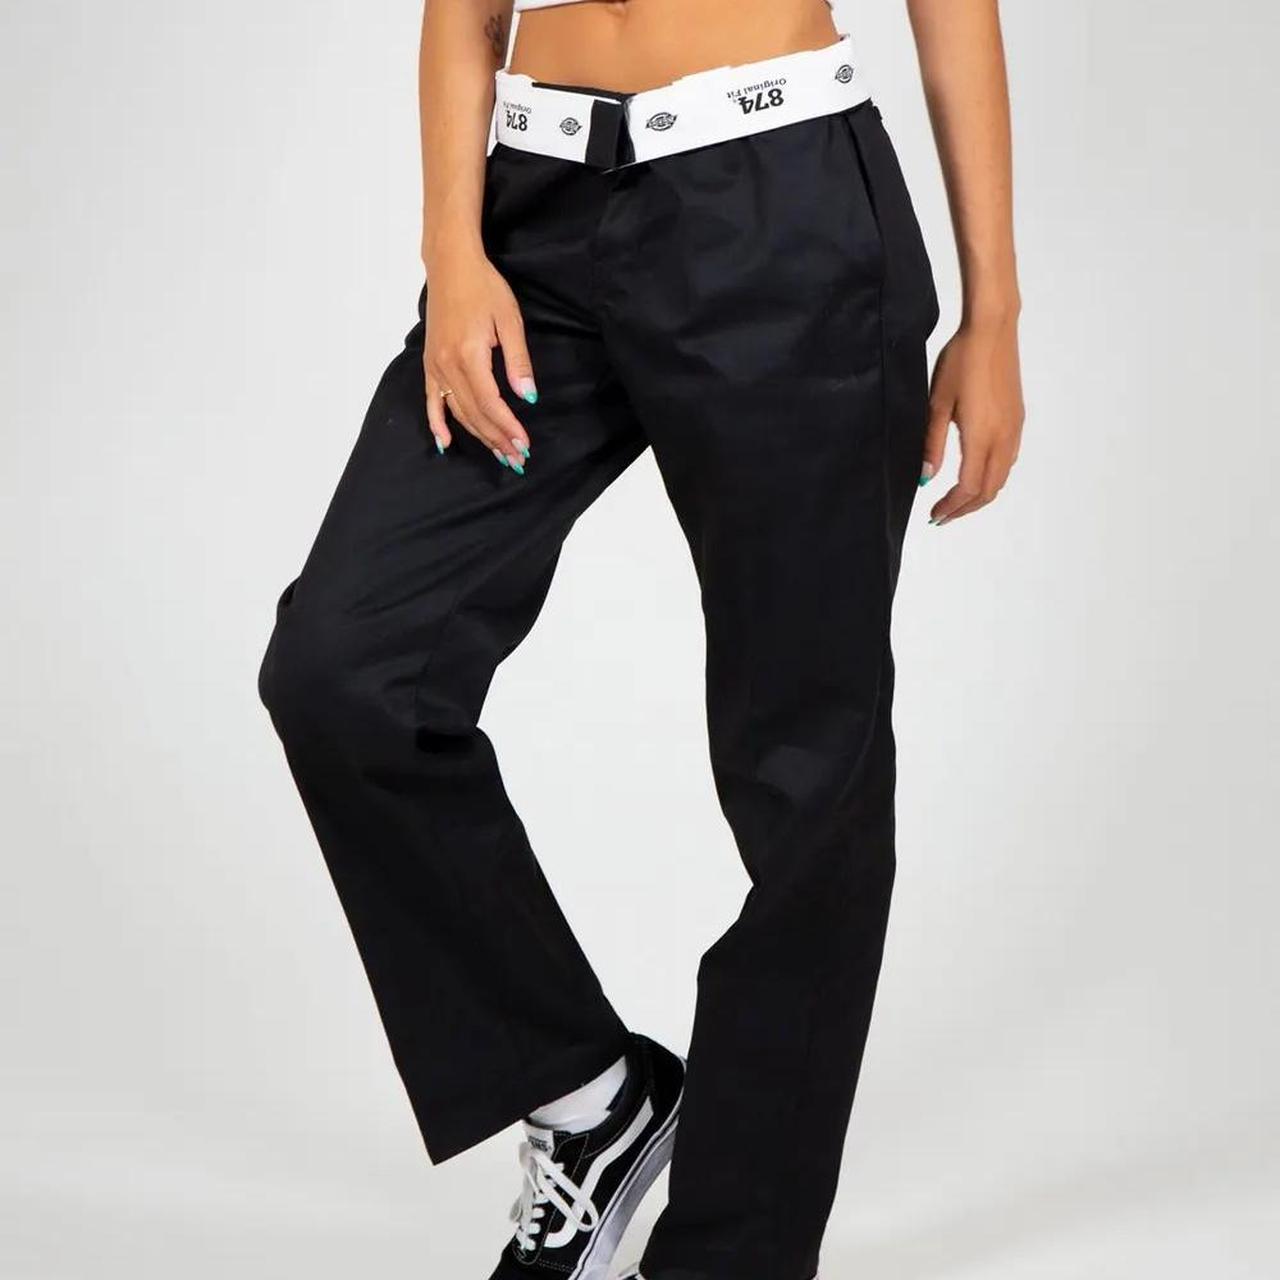 DICKIES 874 original fit pants in black - size - Depop